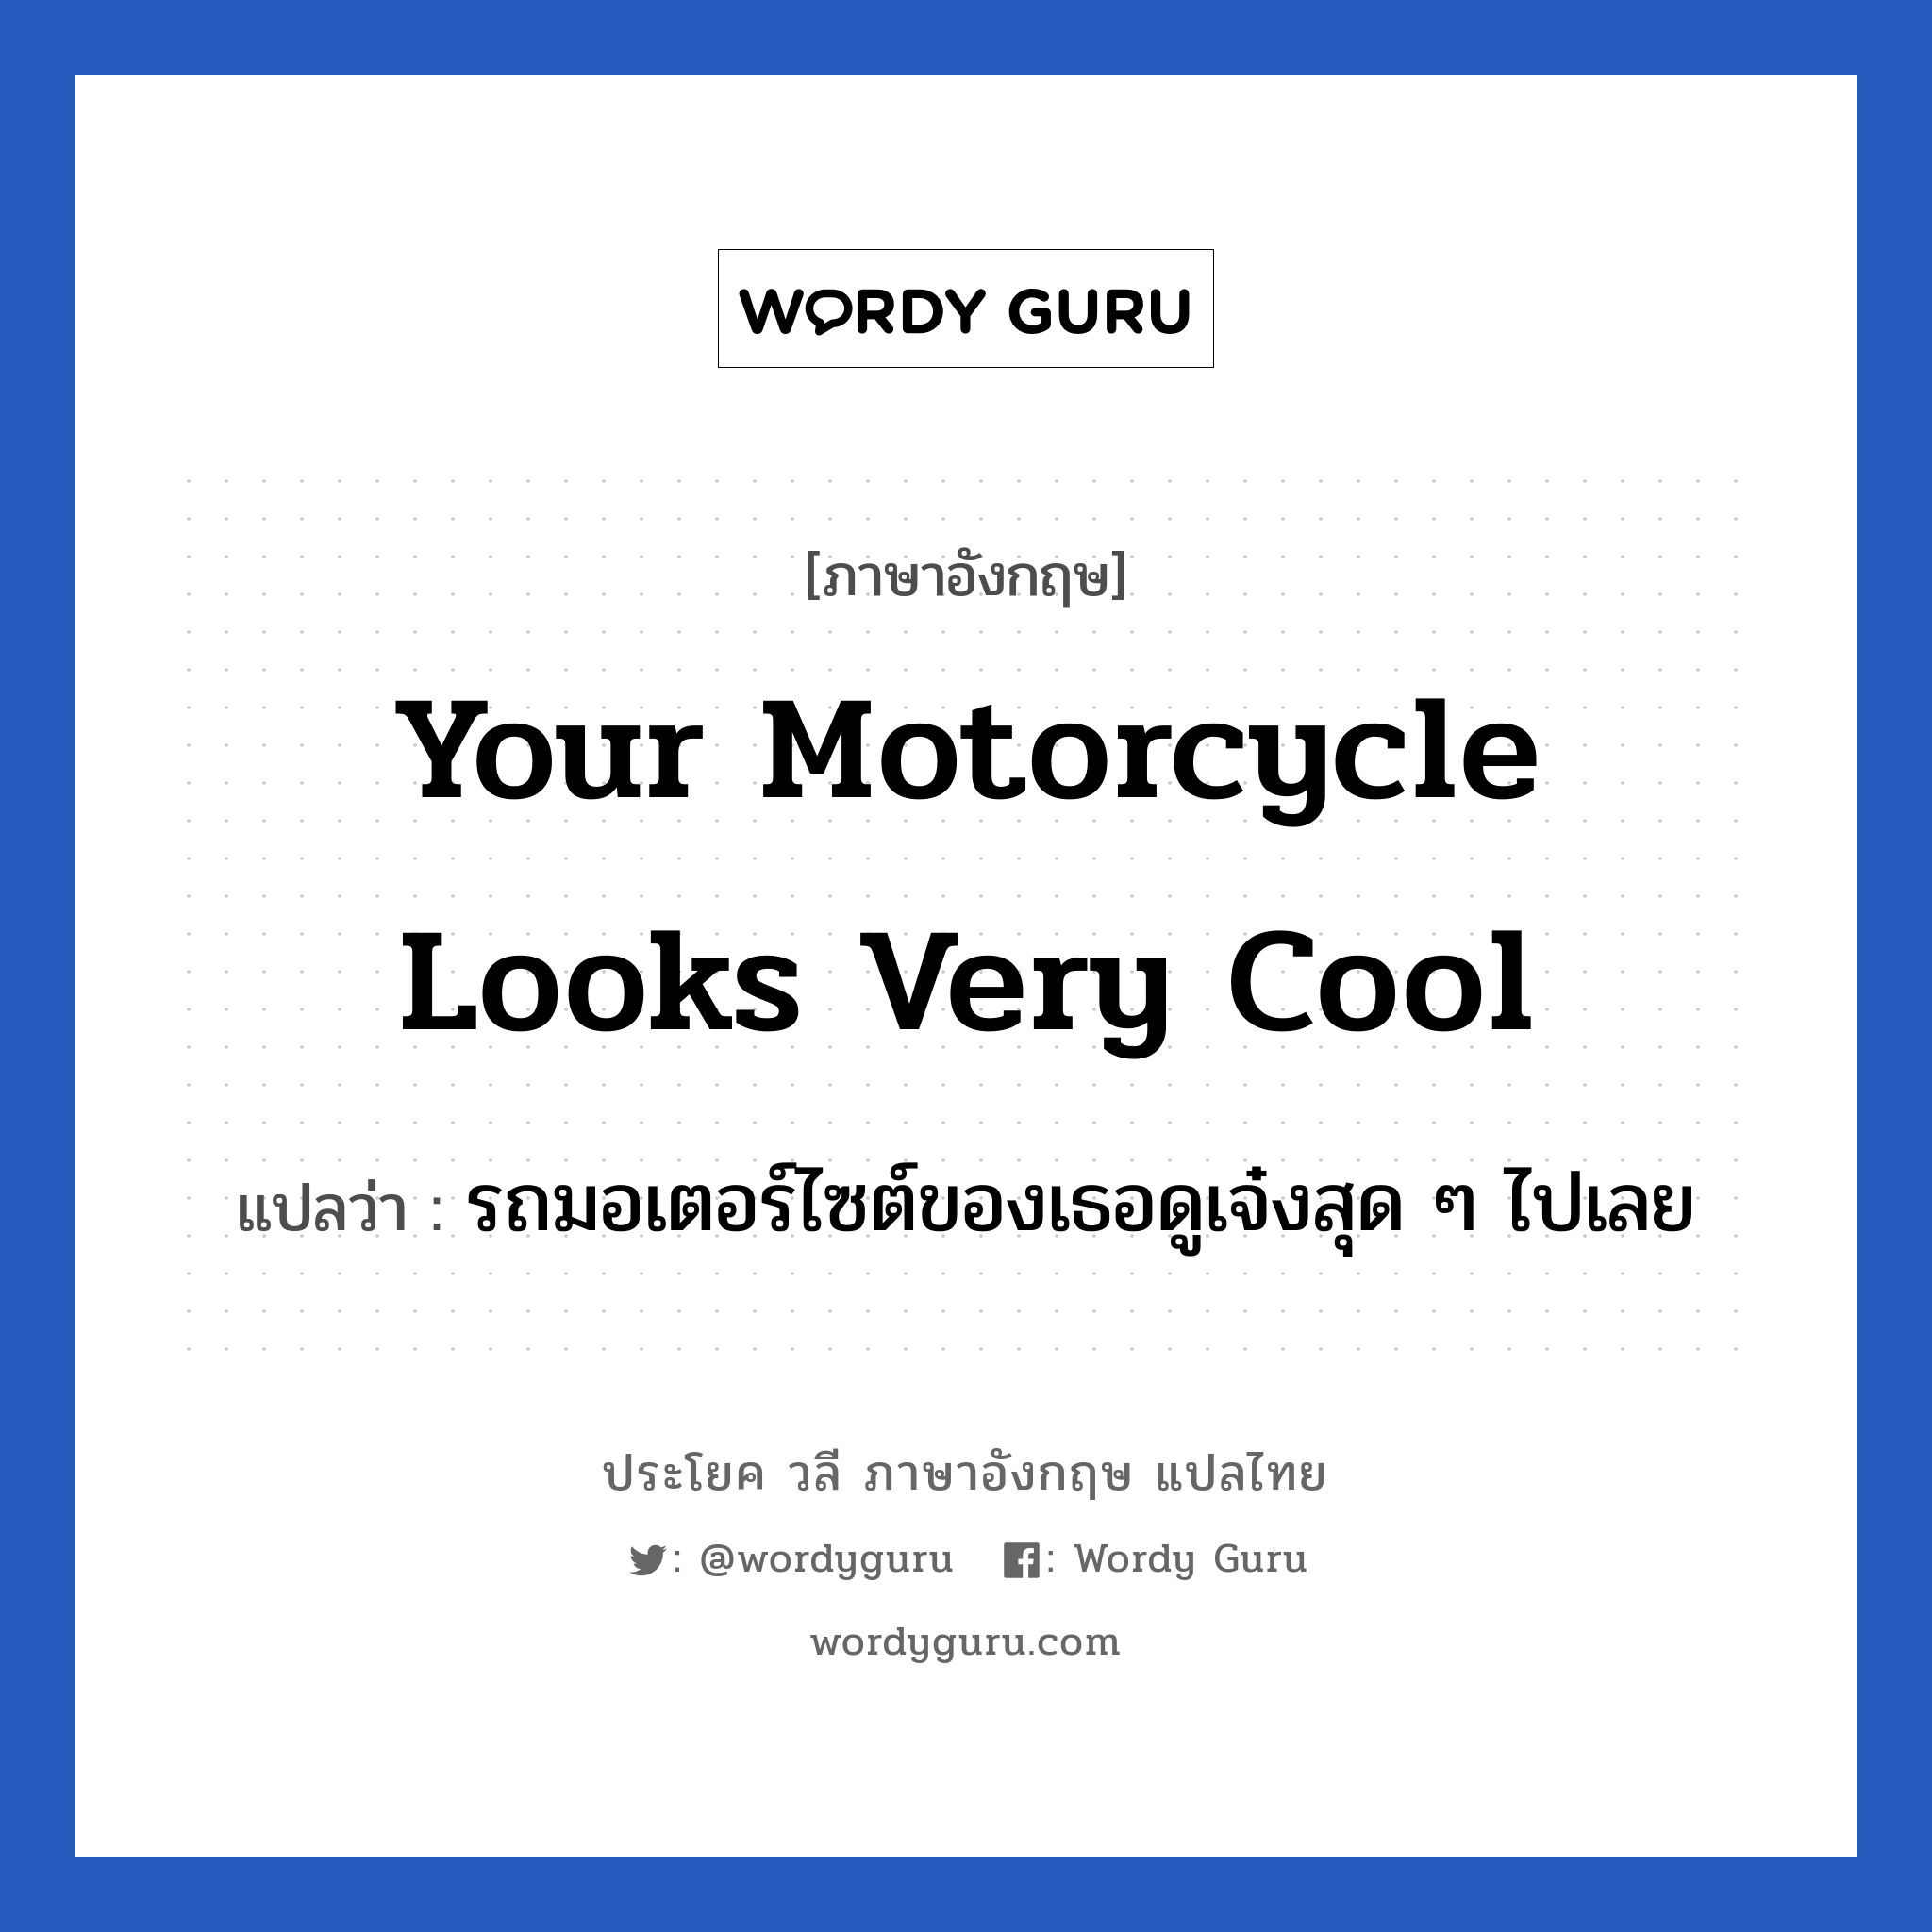 Your motorcycle looks very cool แปลว่า?, วลีภาษาอังกฤษ Your motorcycle looks very cool แปลว่า รถมอเตอร์ไซต์ของเธอดูเจ๋งสุด ๆ ไปเลย หมวด คำชมเชย